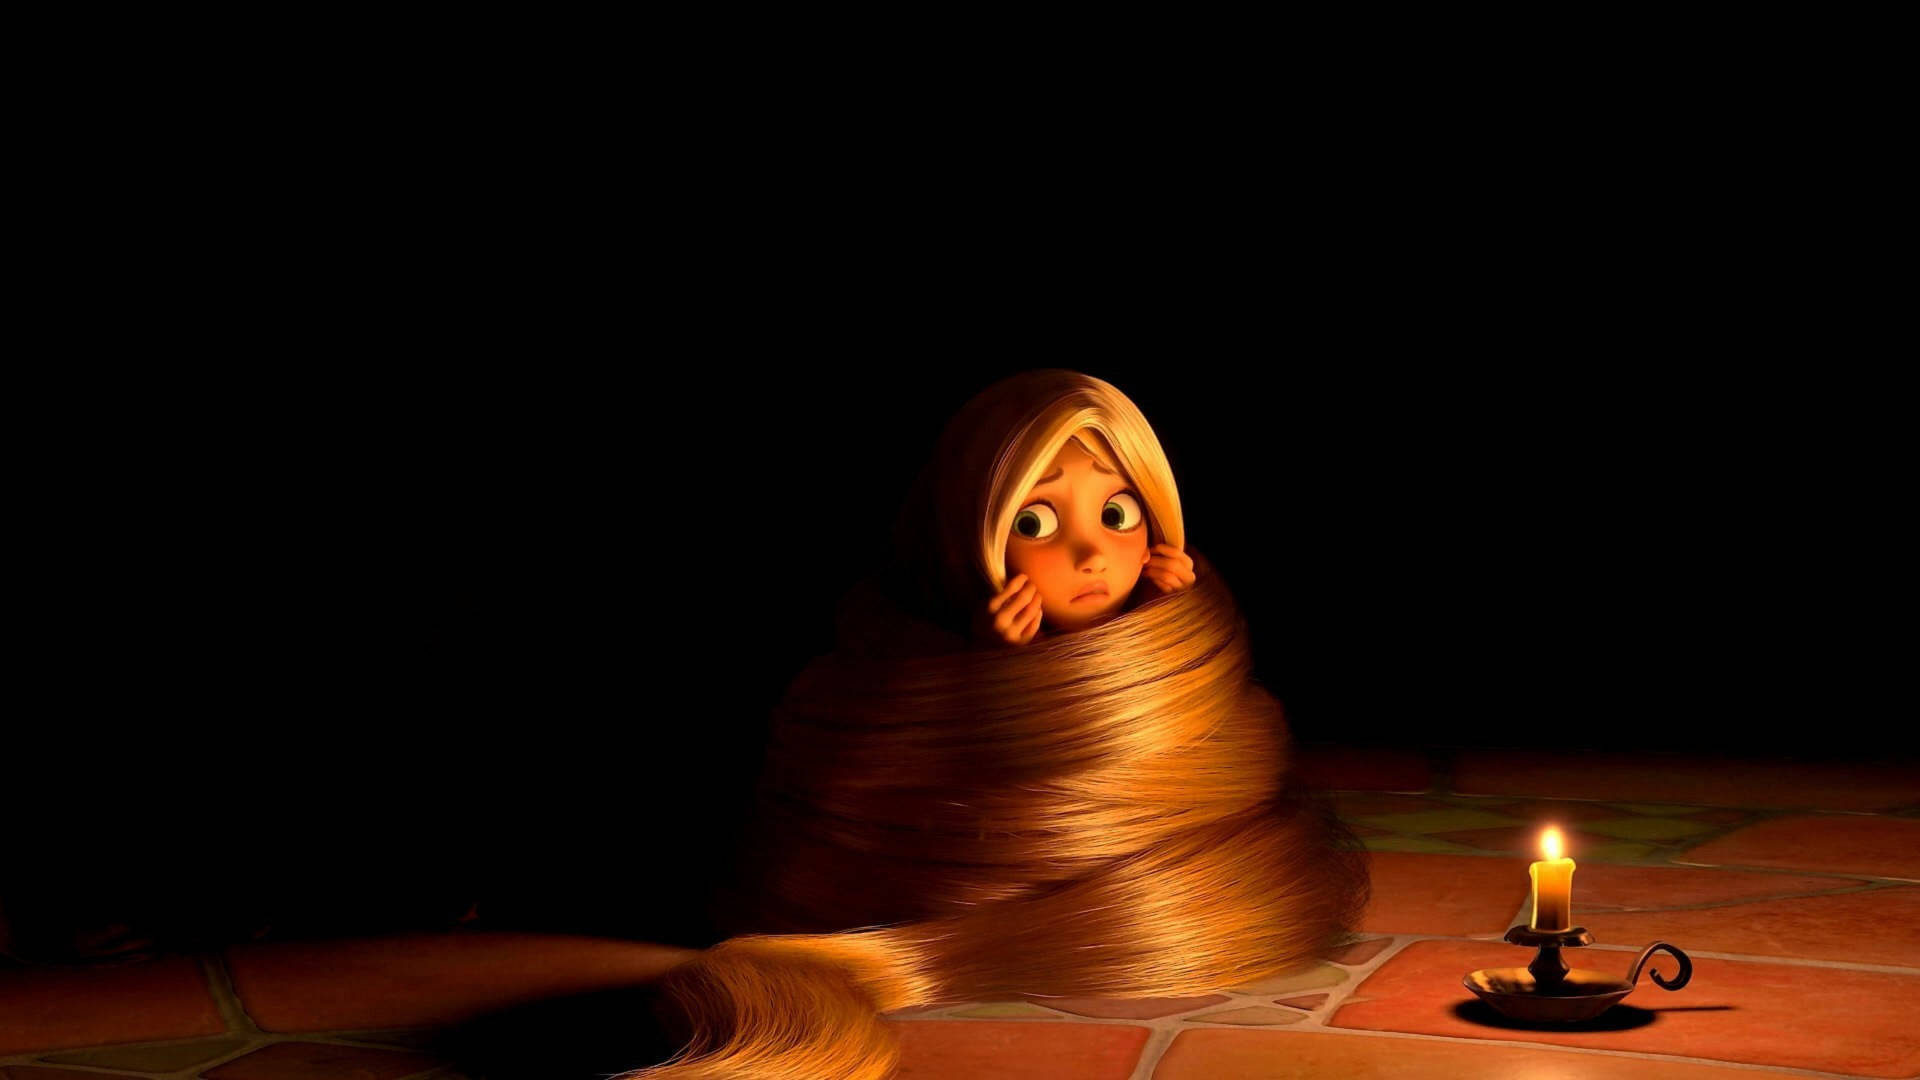 2560x1440 Disney Rapunzel Hiding In Hair